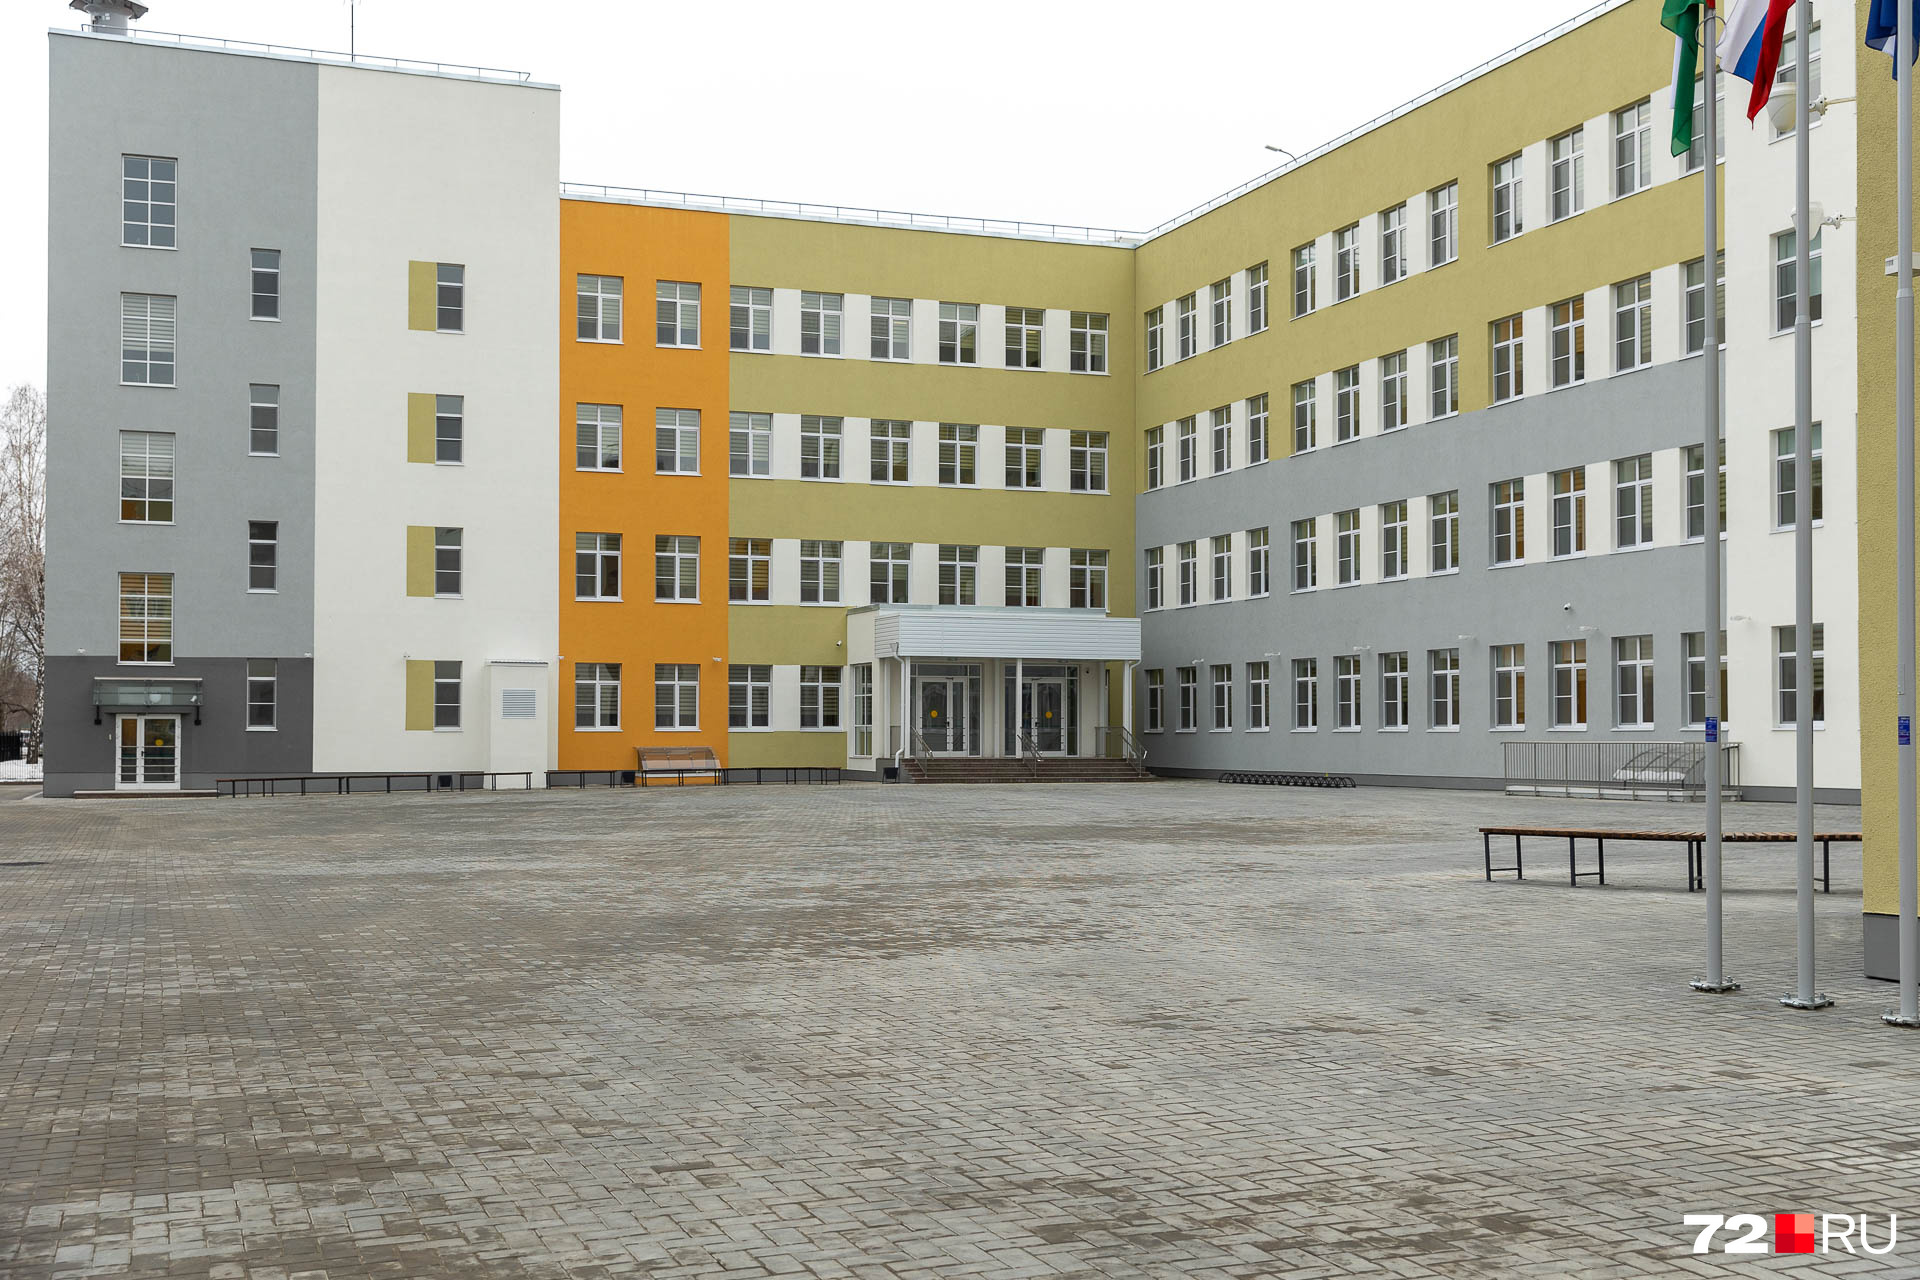 Издалека здание школы кажется очень компактным, но его общая площадь (представьте только!) — <nobr class="_">18,8 тысячи</nobr> квадратных метров